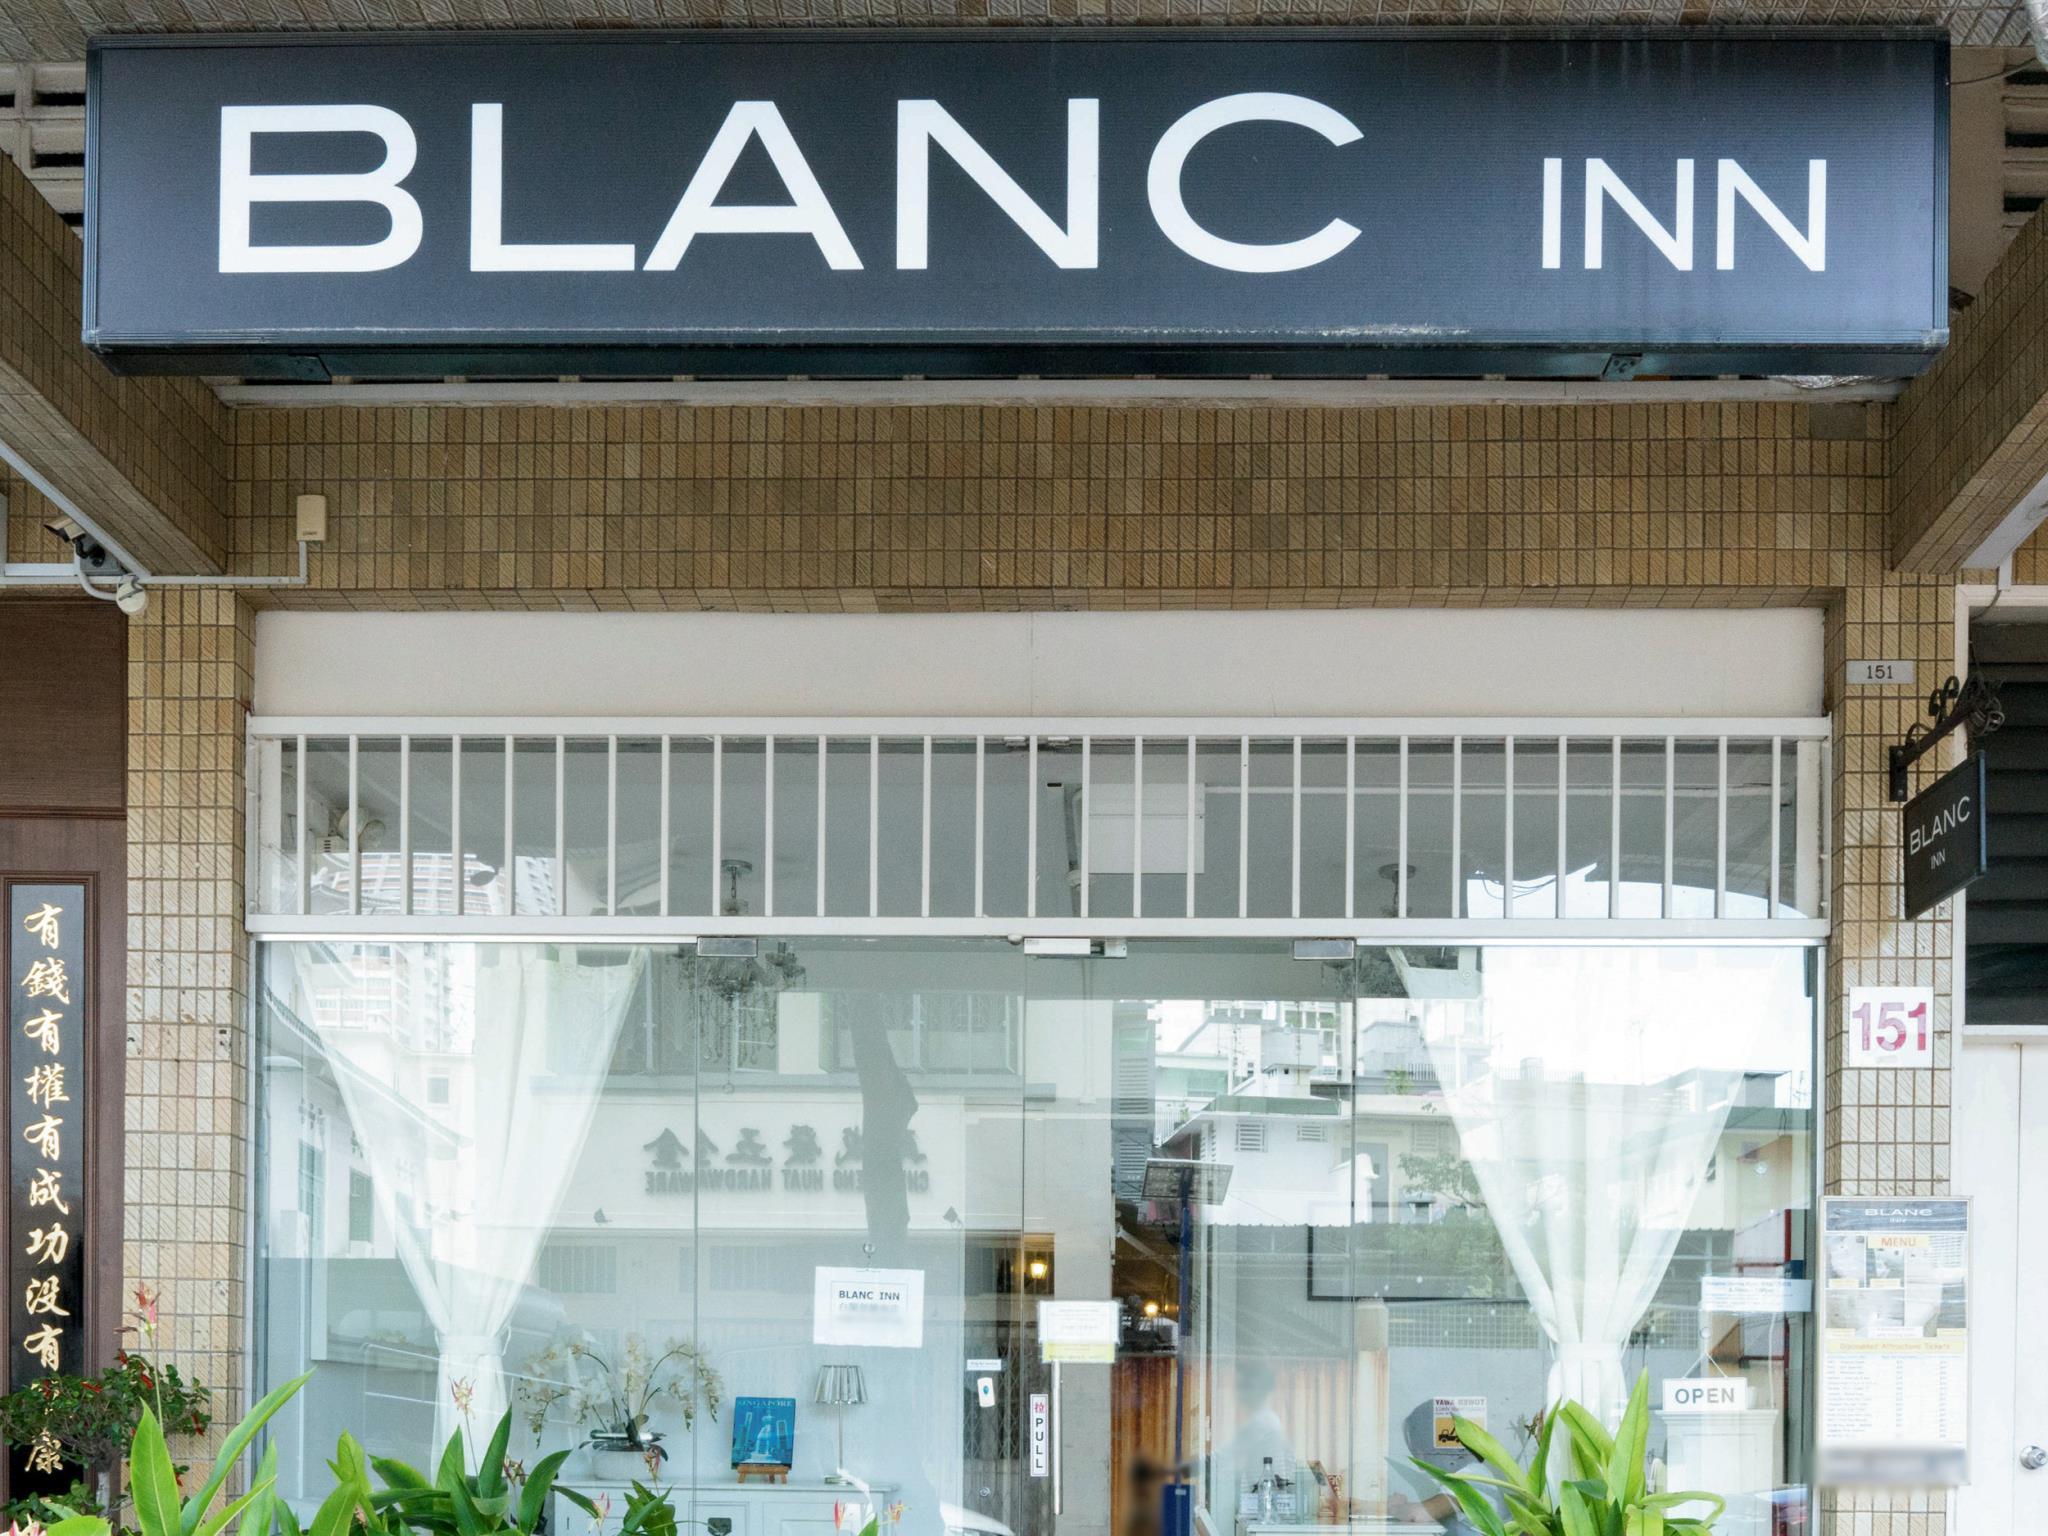 Blanc-Inn 便宜好旅馆，新加坡只有一个使用单人/双人床。旅舍不提供双层床或胶囊床。睡得很舒服。